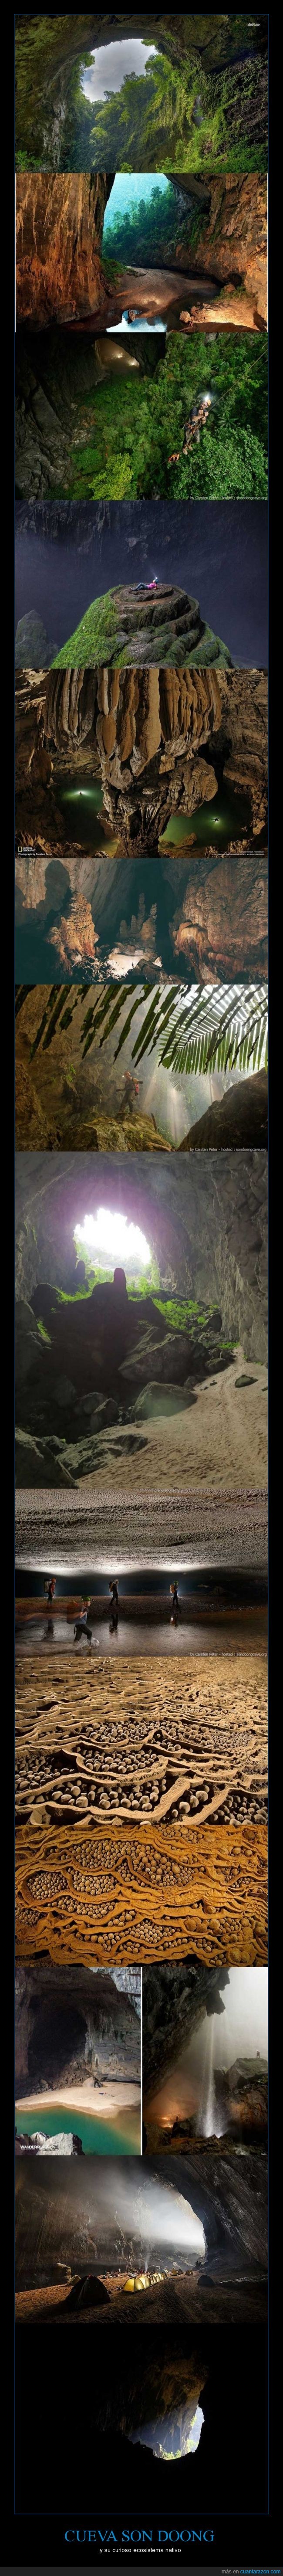 cueva,eso es una caverna,selva bajo otra selva ._.,dentro,ecosistema,Son Doong